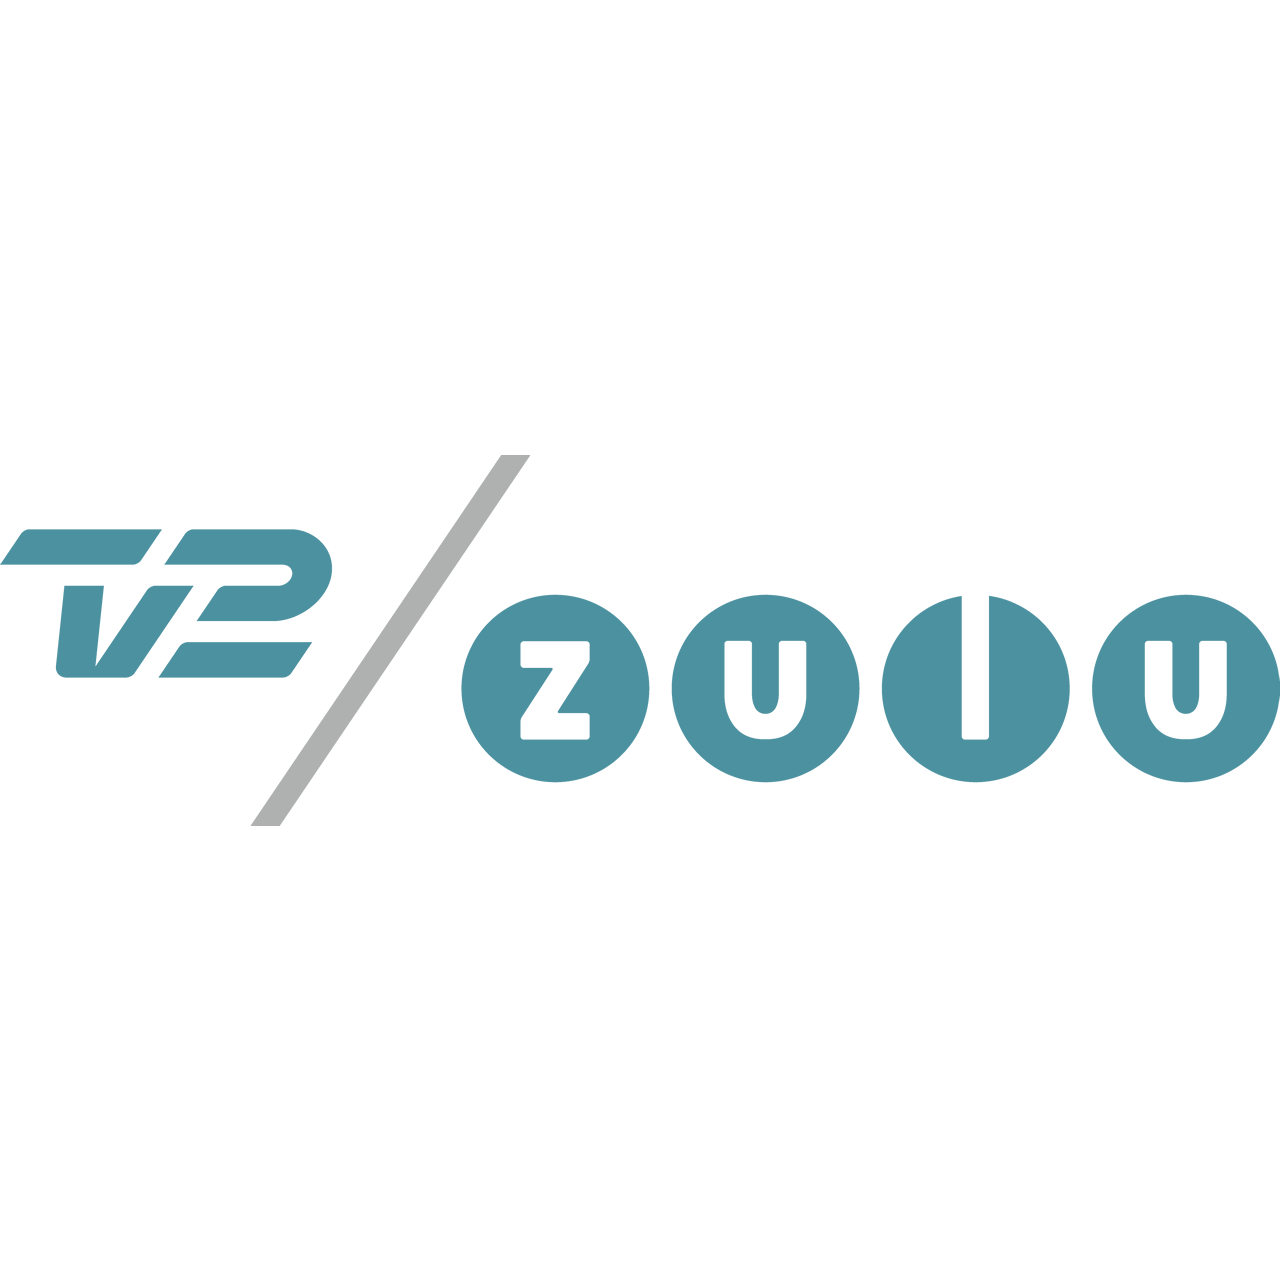 TV2 zulu